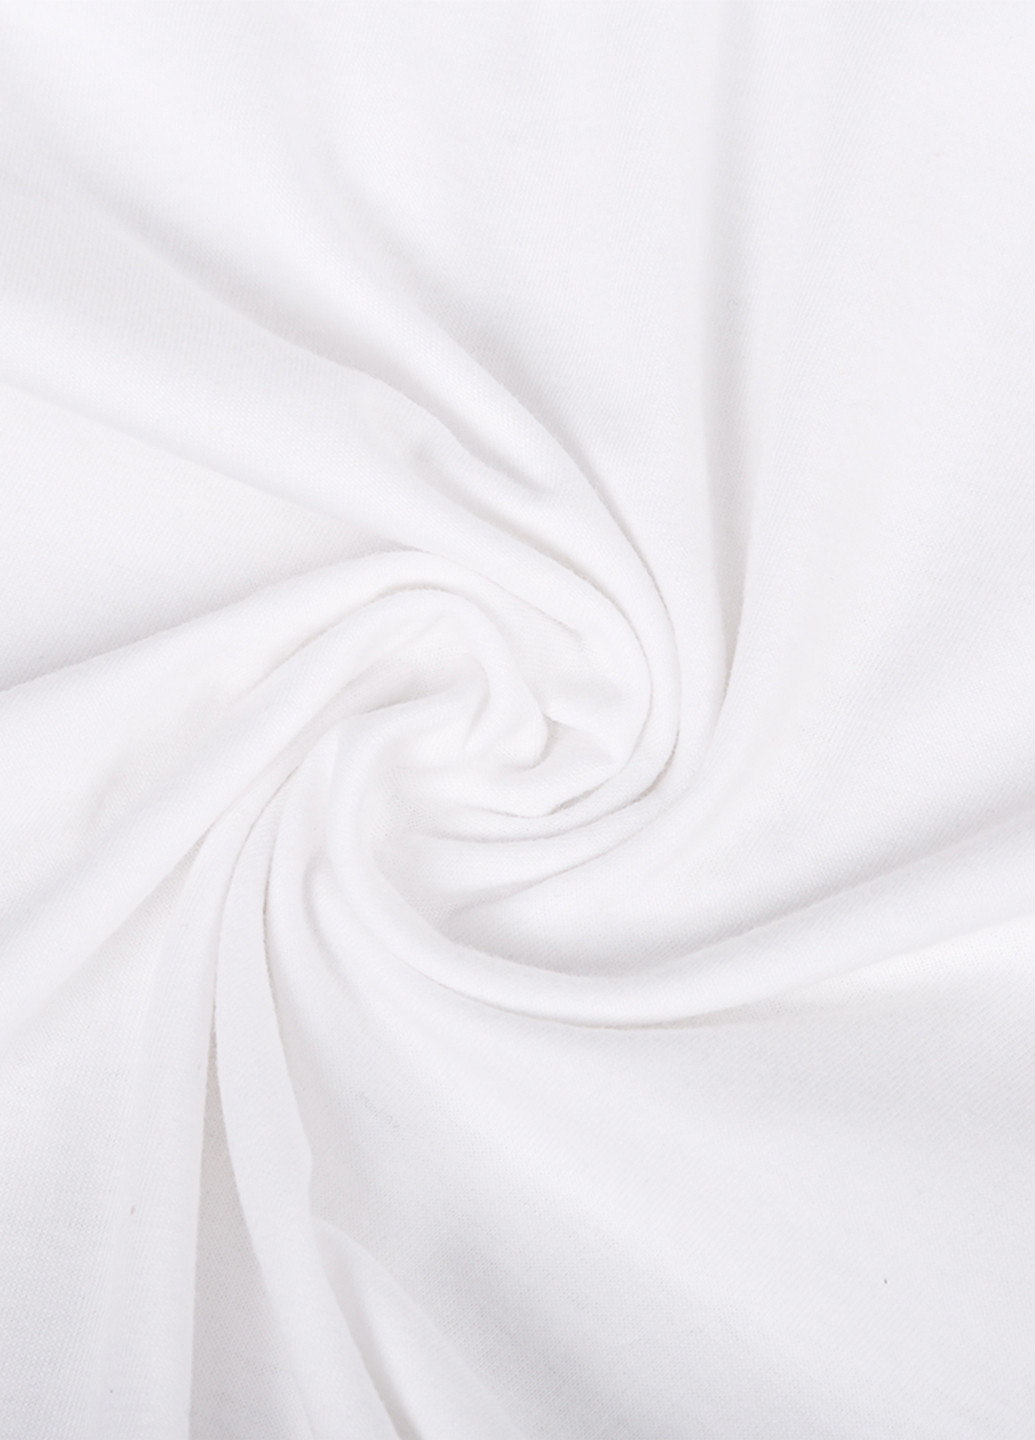 Белая демисезонная футболка детская лайк (likee) белый (9224-1041) 164 см MobiPrint